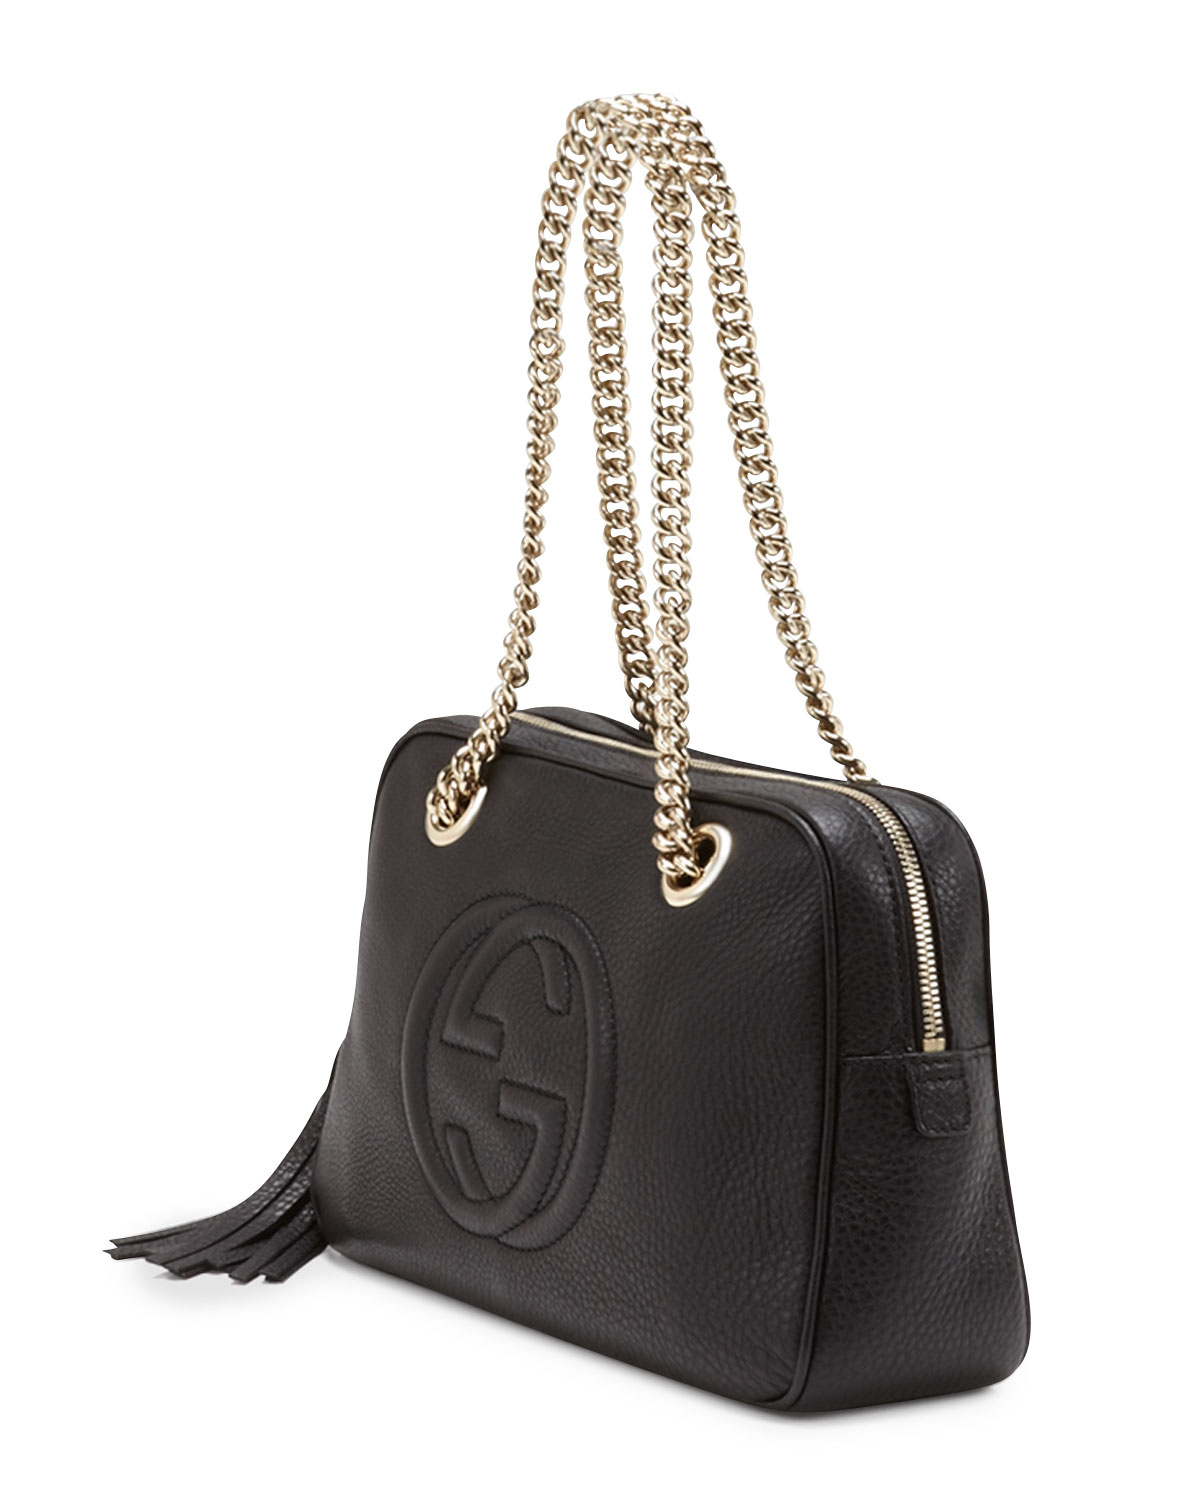 Gucci Black Leather Purse Strap | semashow.com